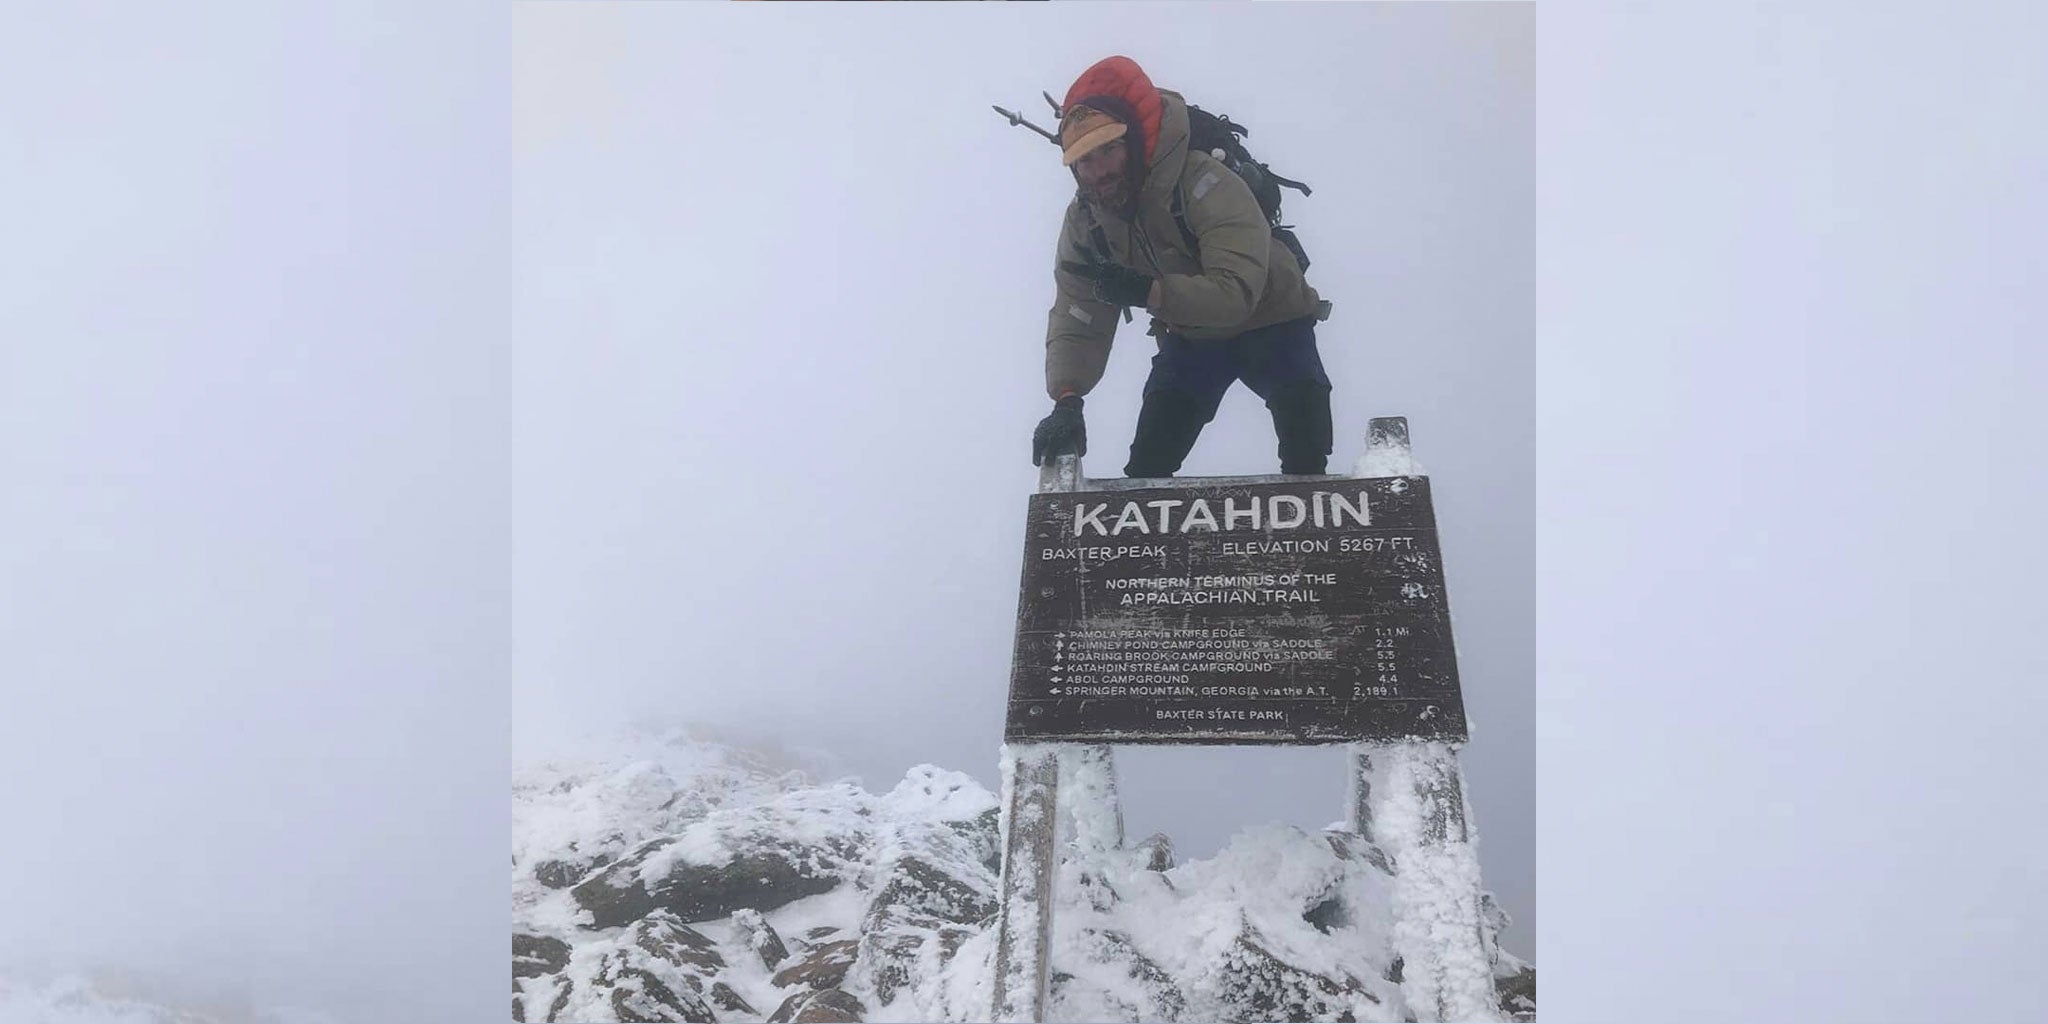 Winter summit on Mount Katahdin